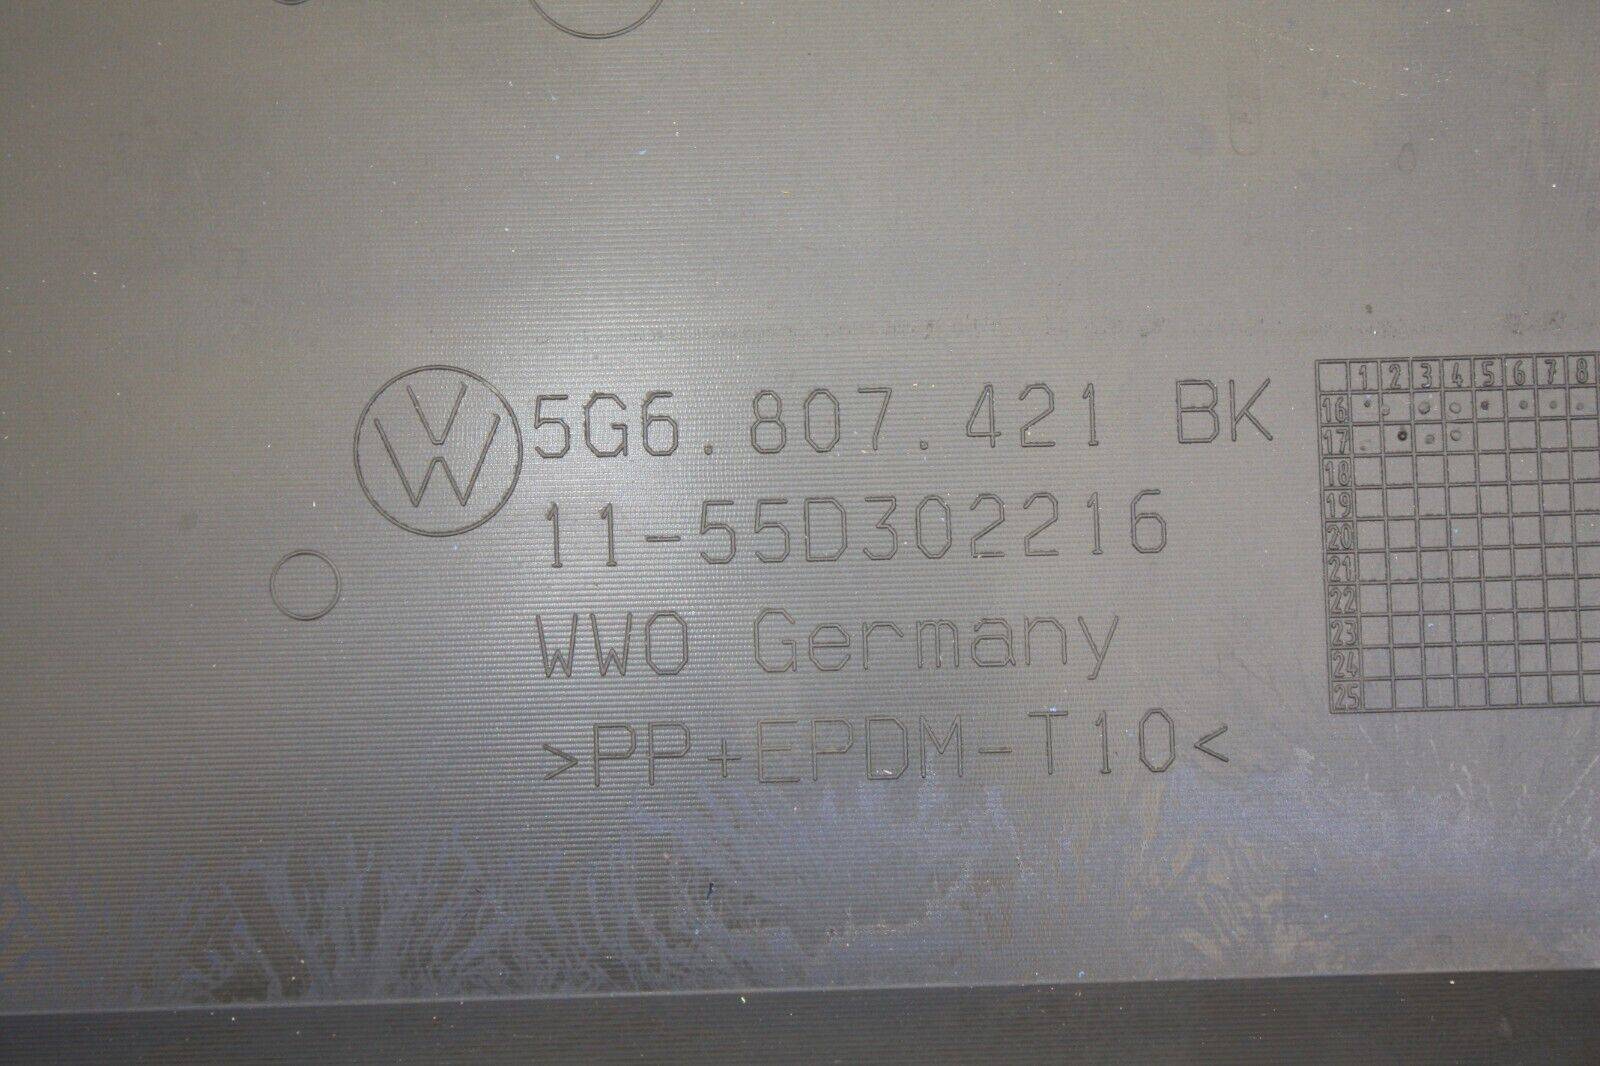 VW-Golf-Rear-Bumper-2017-TO-2020-5G6807421BK-Genuine-176350326094-10